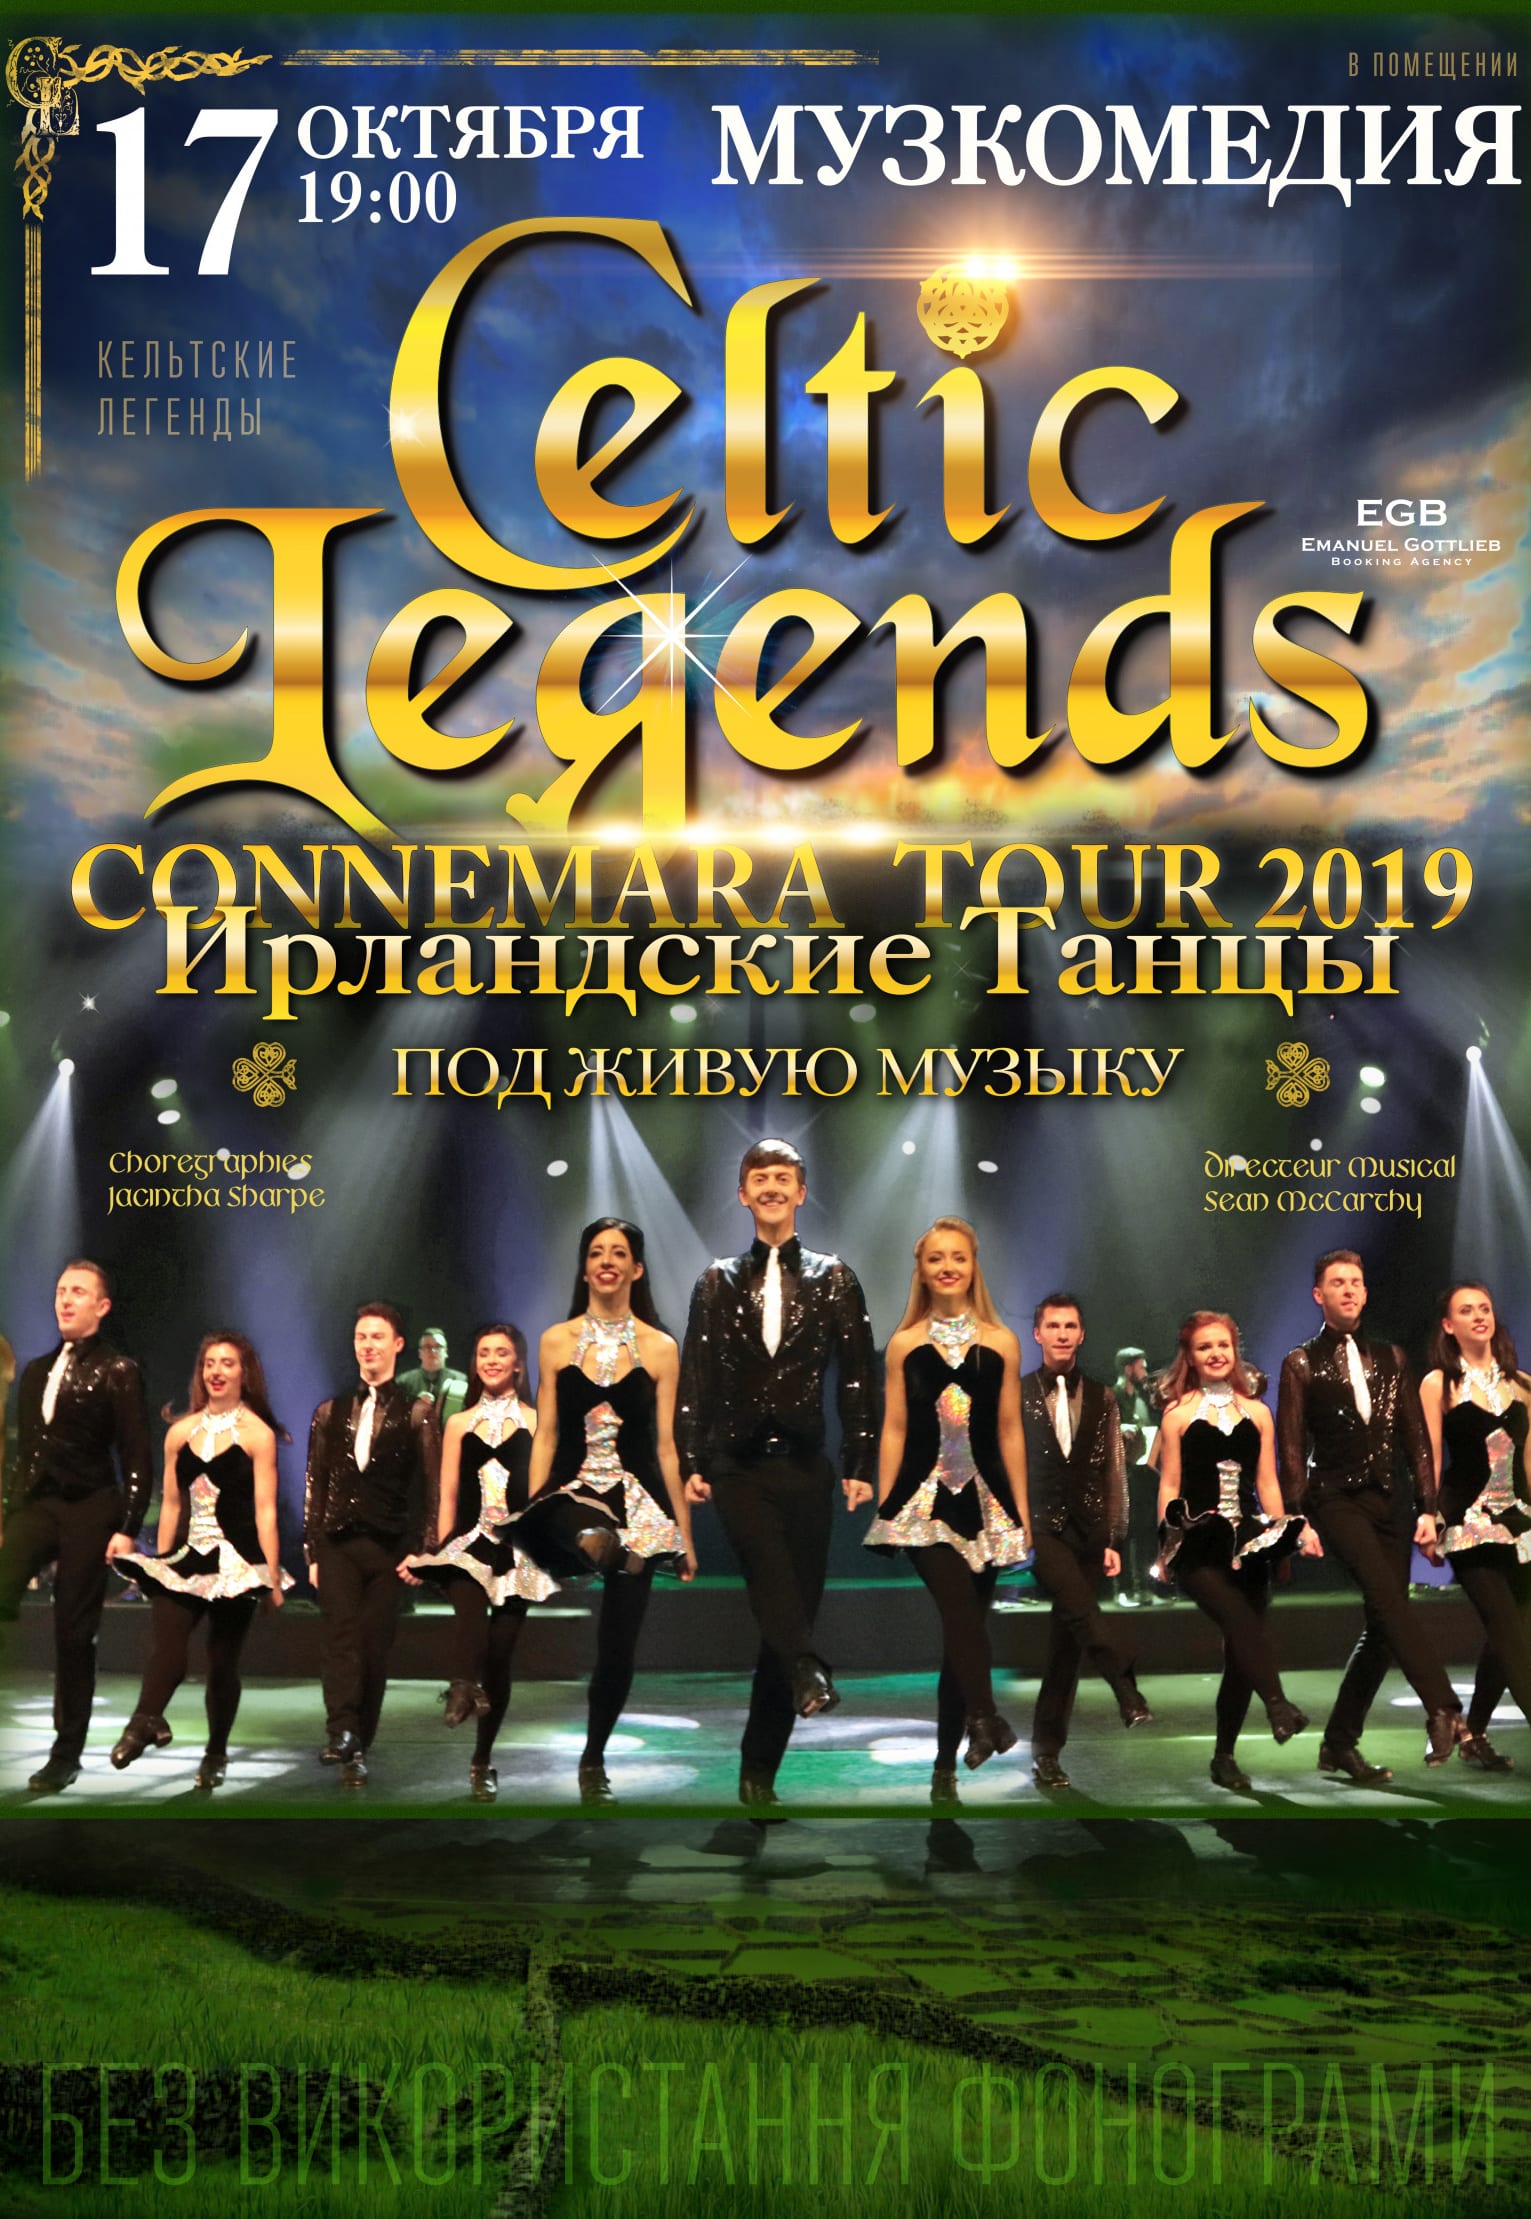 Celtic Legends Днепр, 20.10.2019, купить билеты. Афиша Днепра